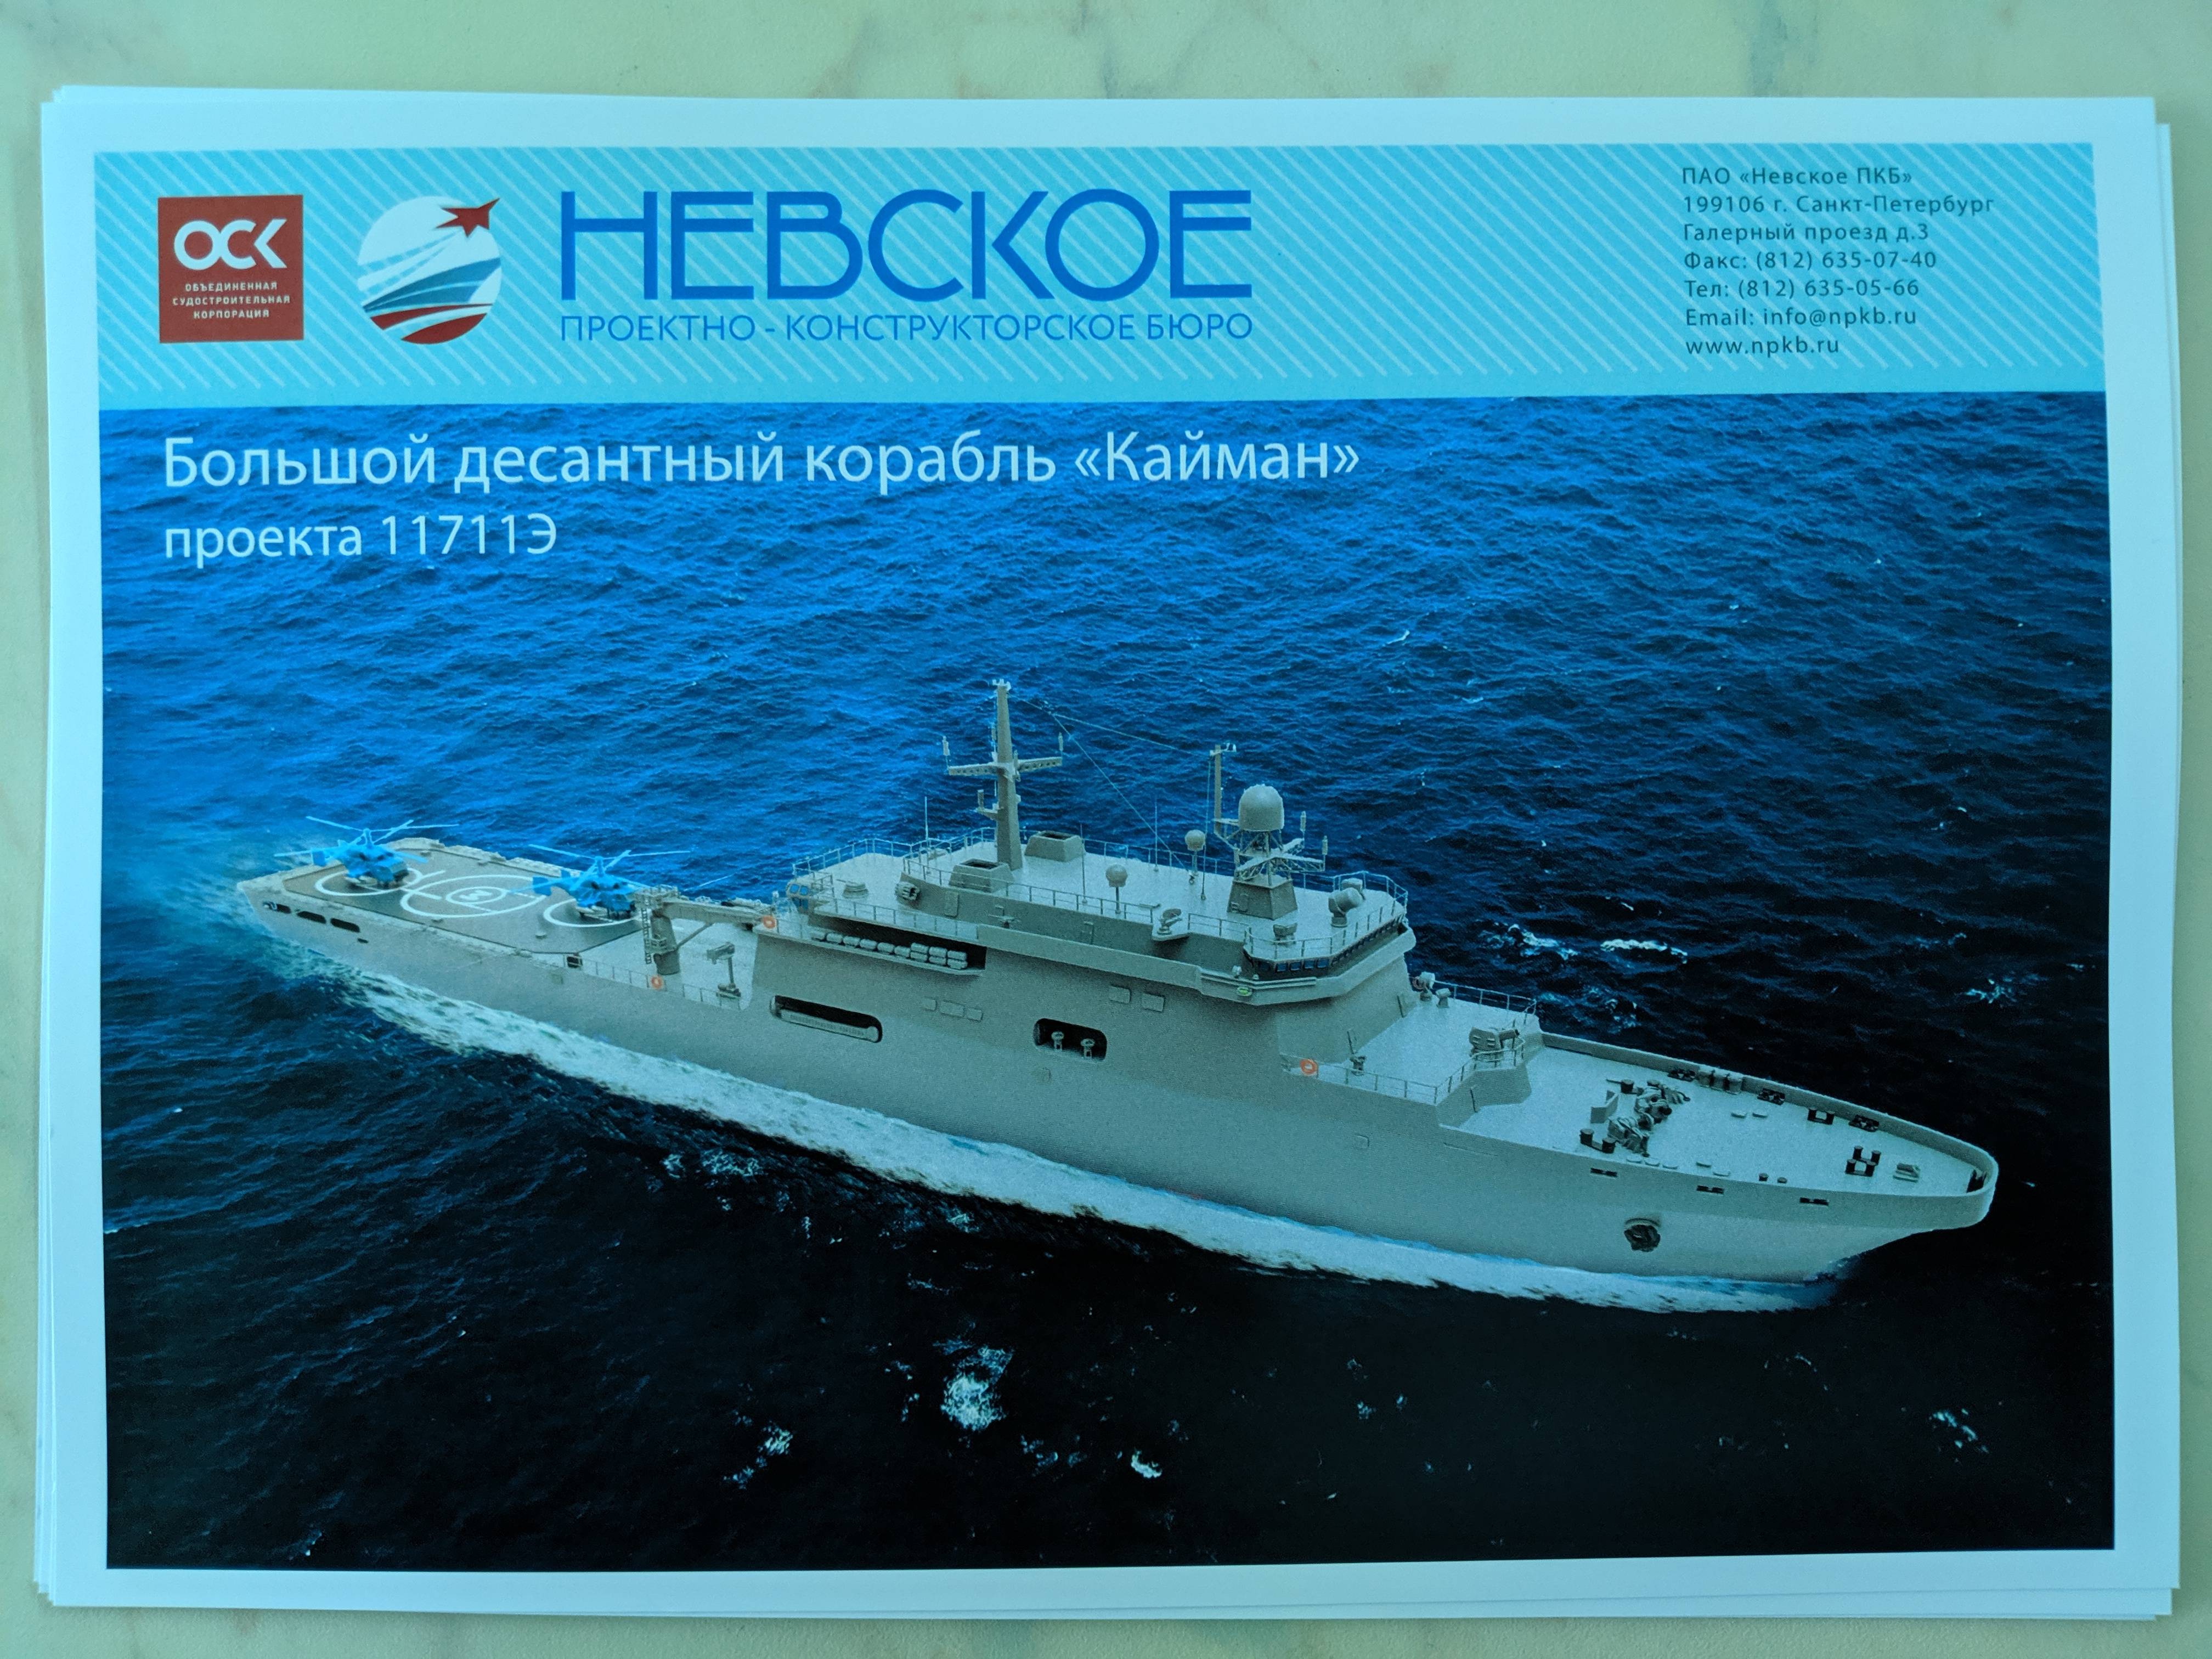 Иван грен большой десантный корабль: проект 11711, технические характеристики (ттх), вооружение, создание